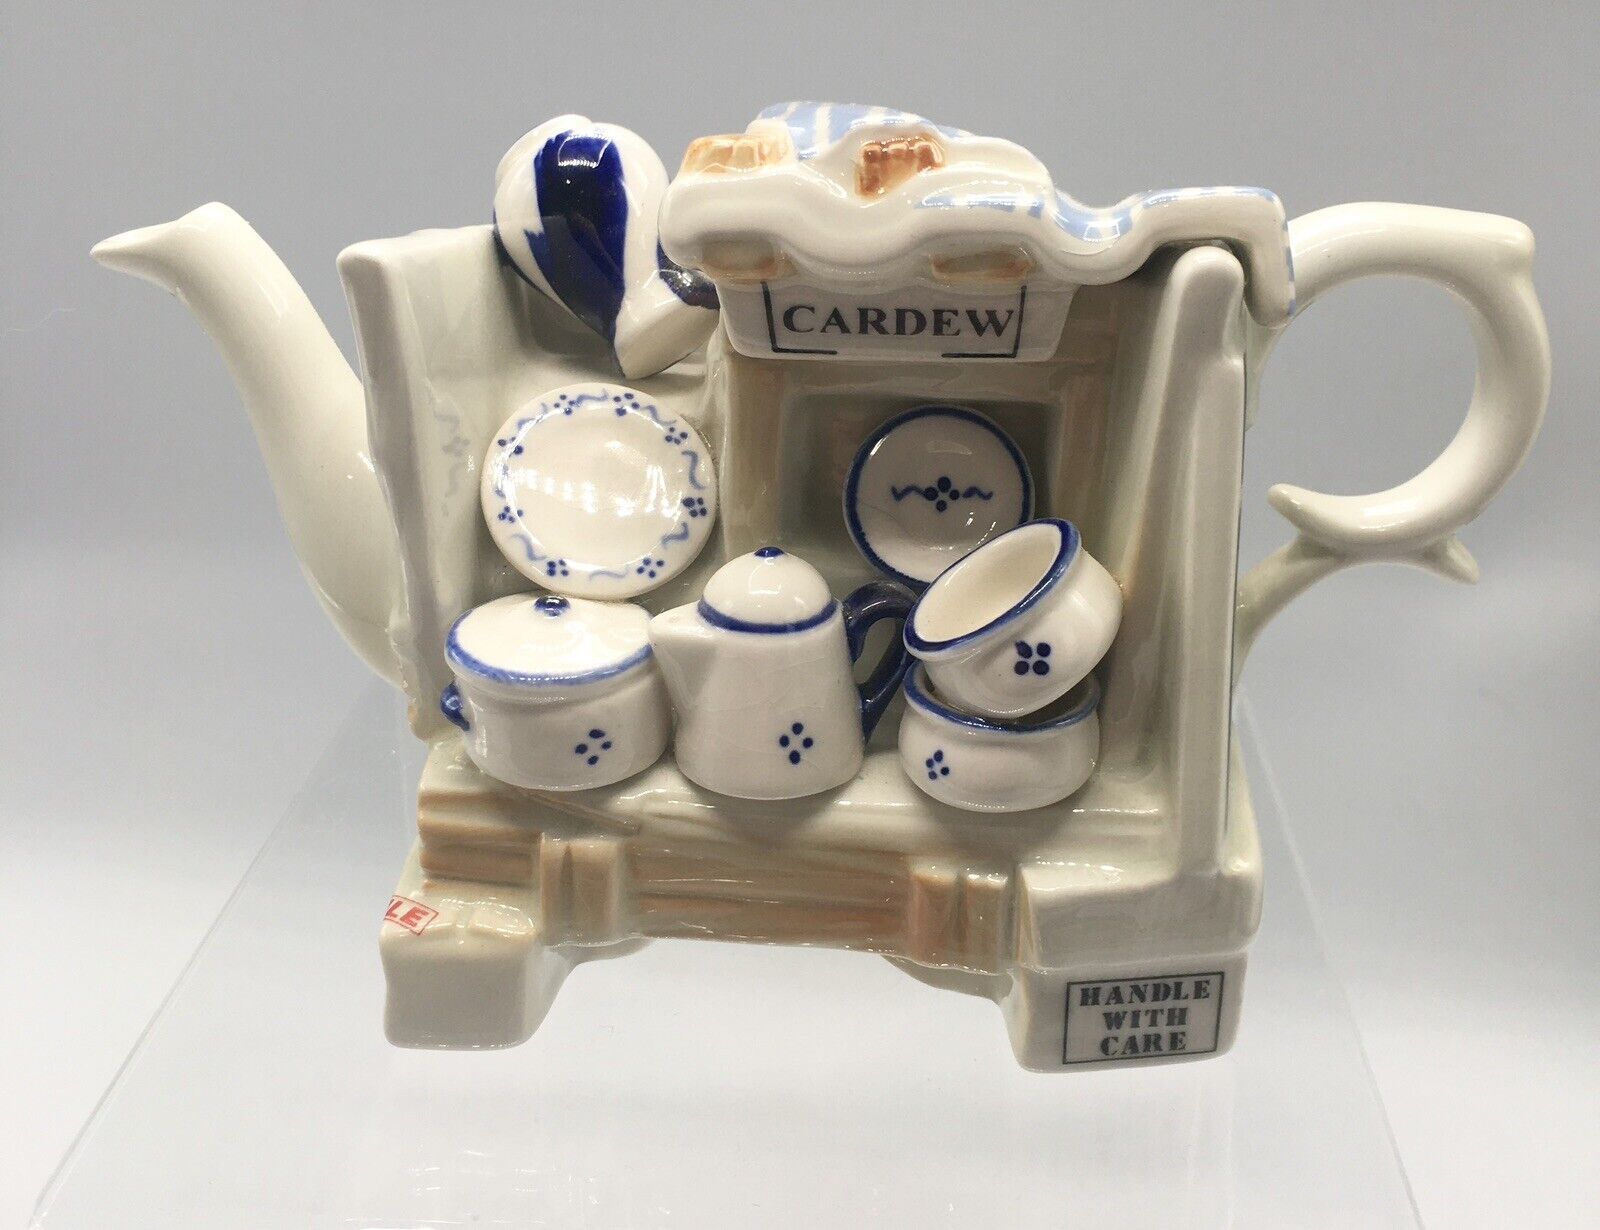 VTG Paul Cardew England Hand Painted Signed Miniature Ceramic Pots & Pans Teapot